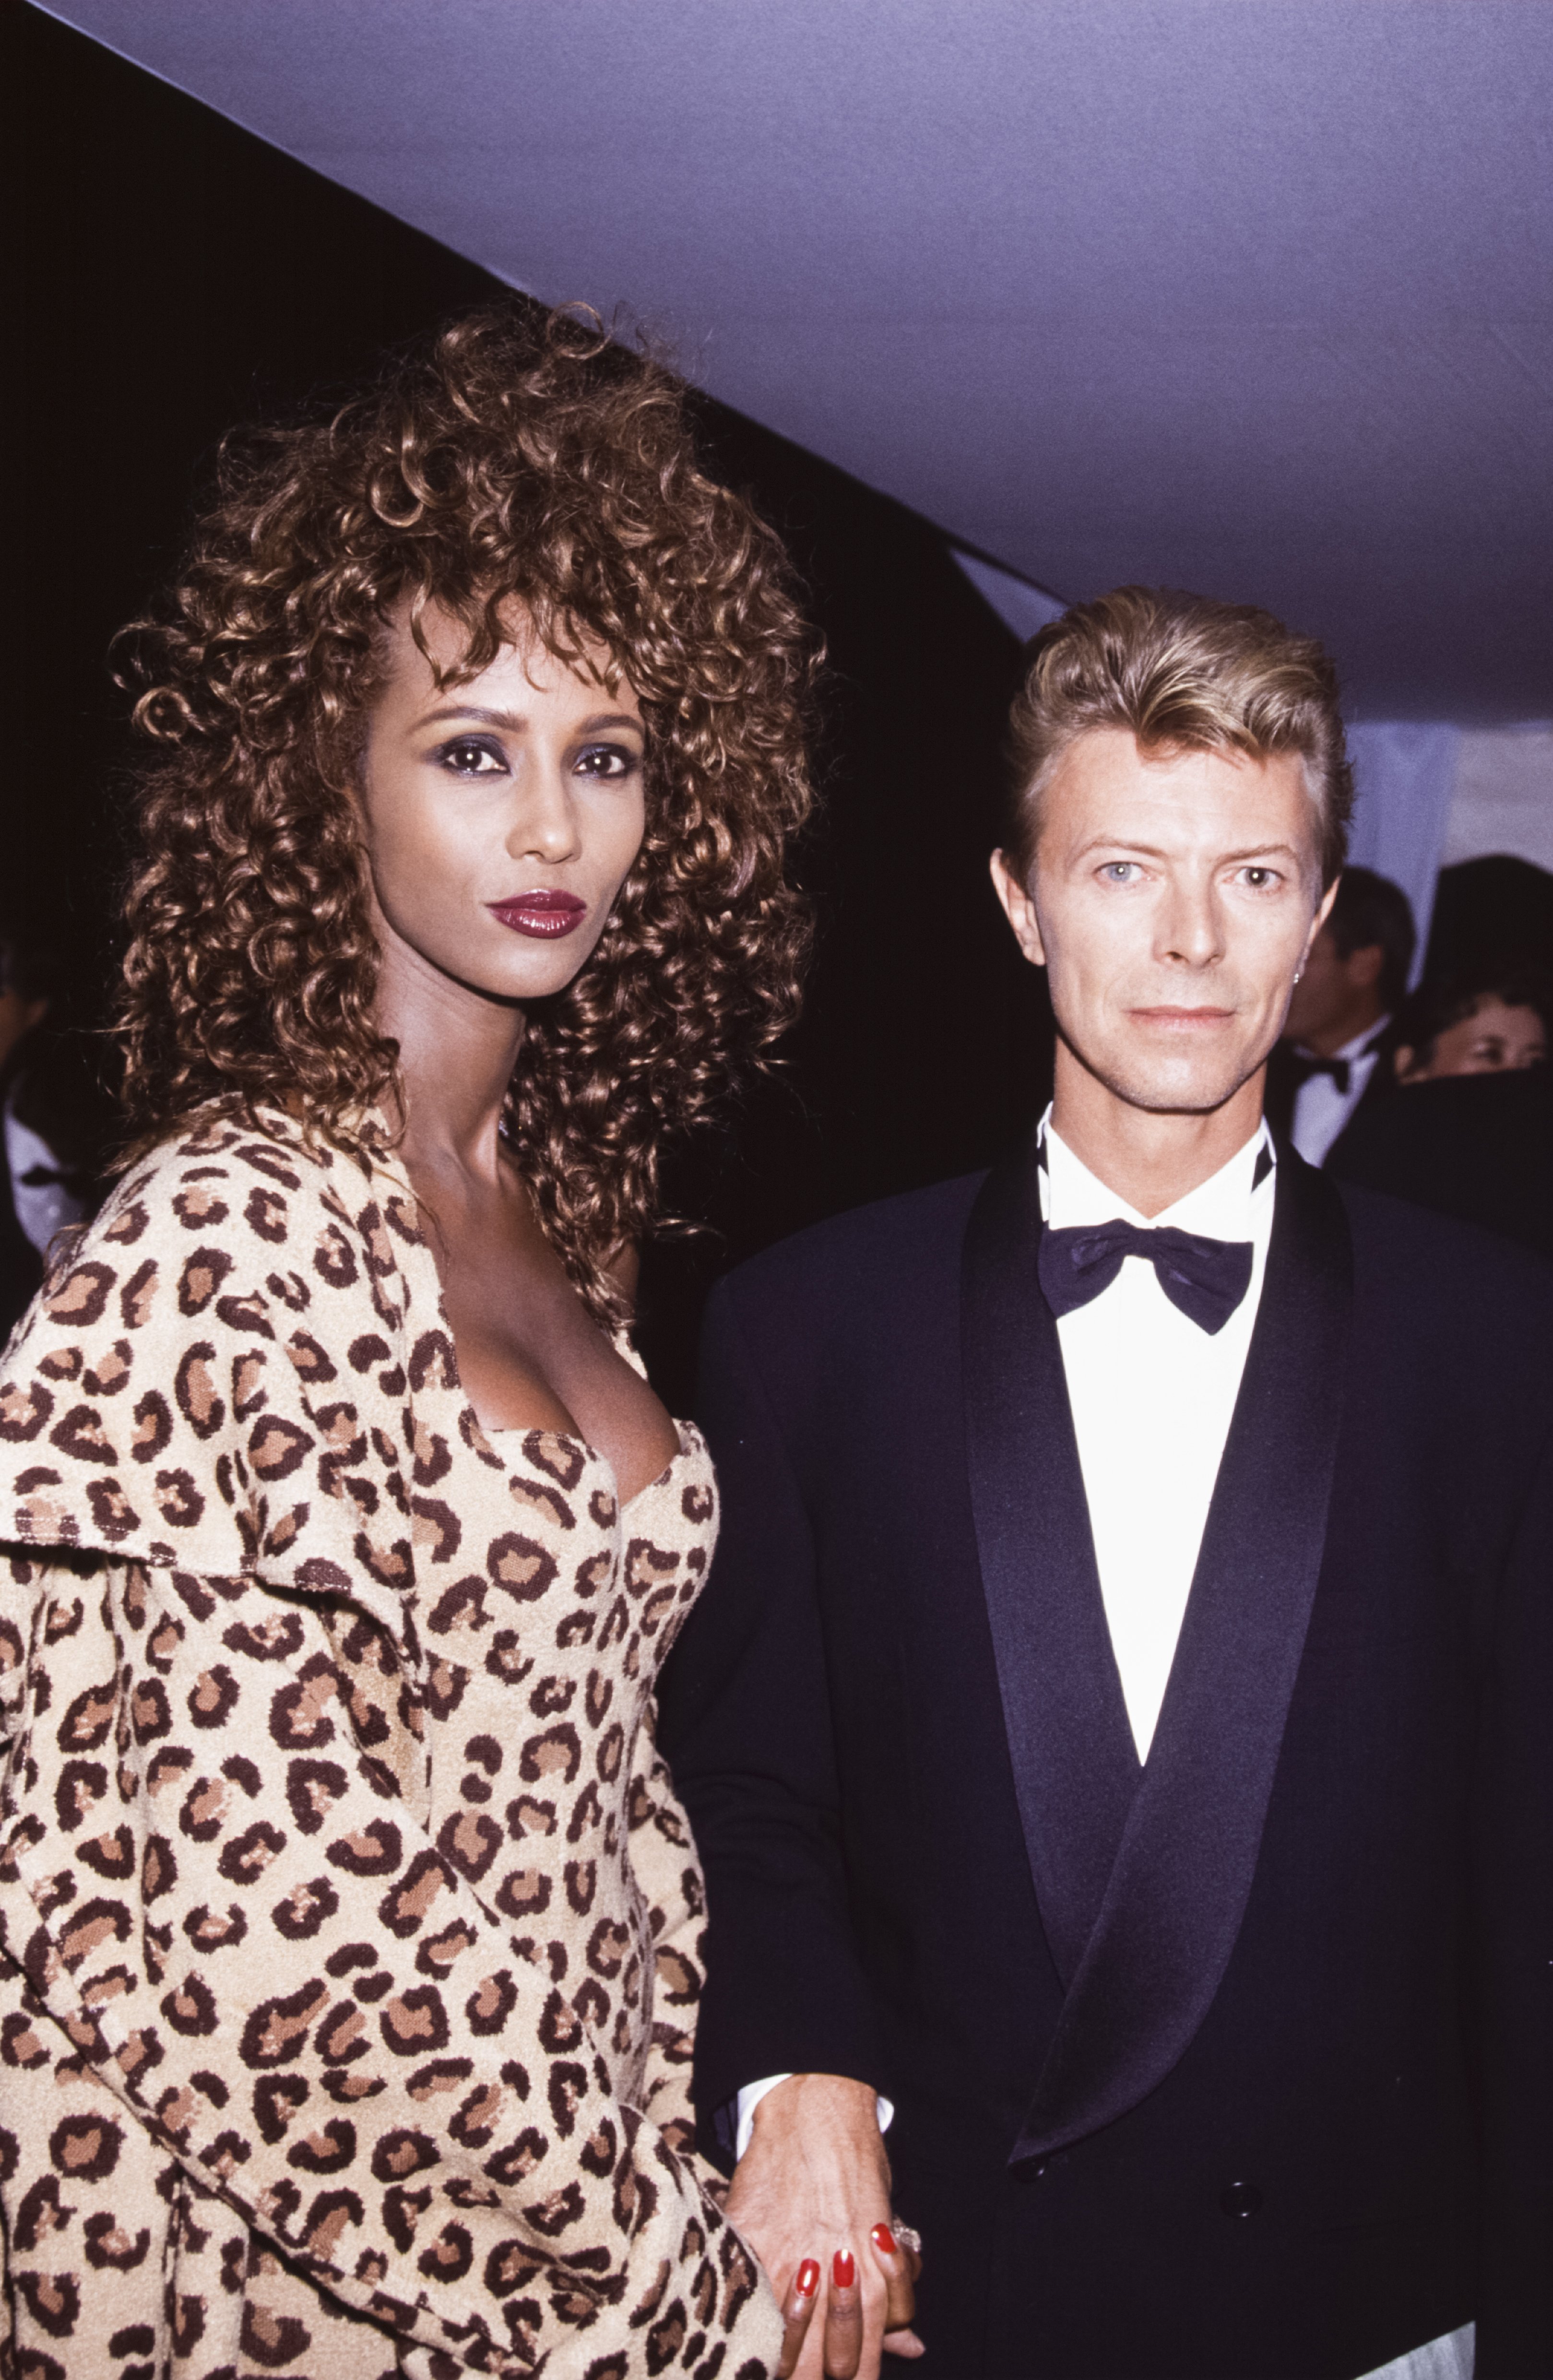 David Bowie con su esposa Iman en septiembre de 1991 en Versalles, Francia | Fuente: Getty Images